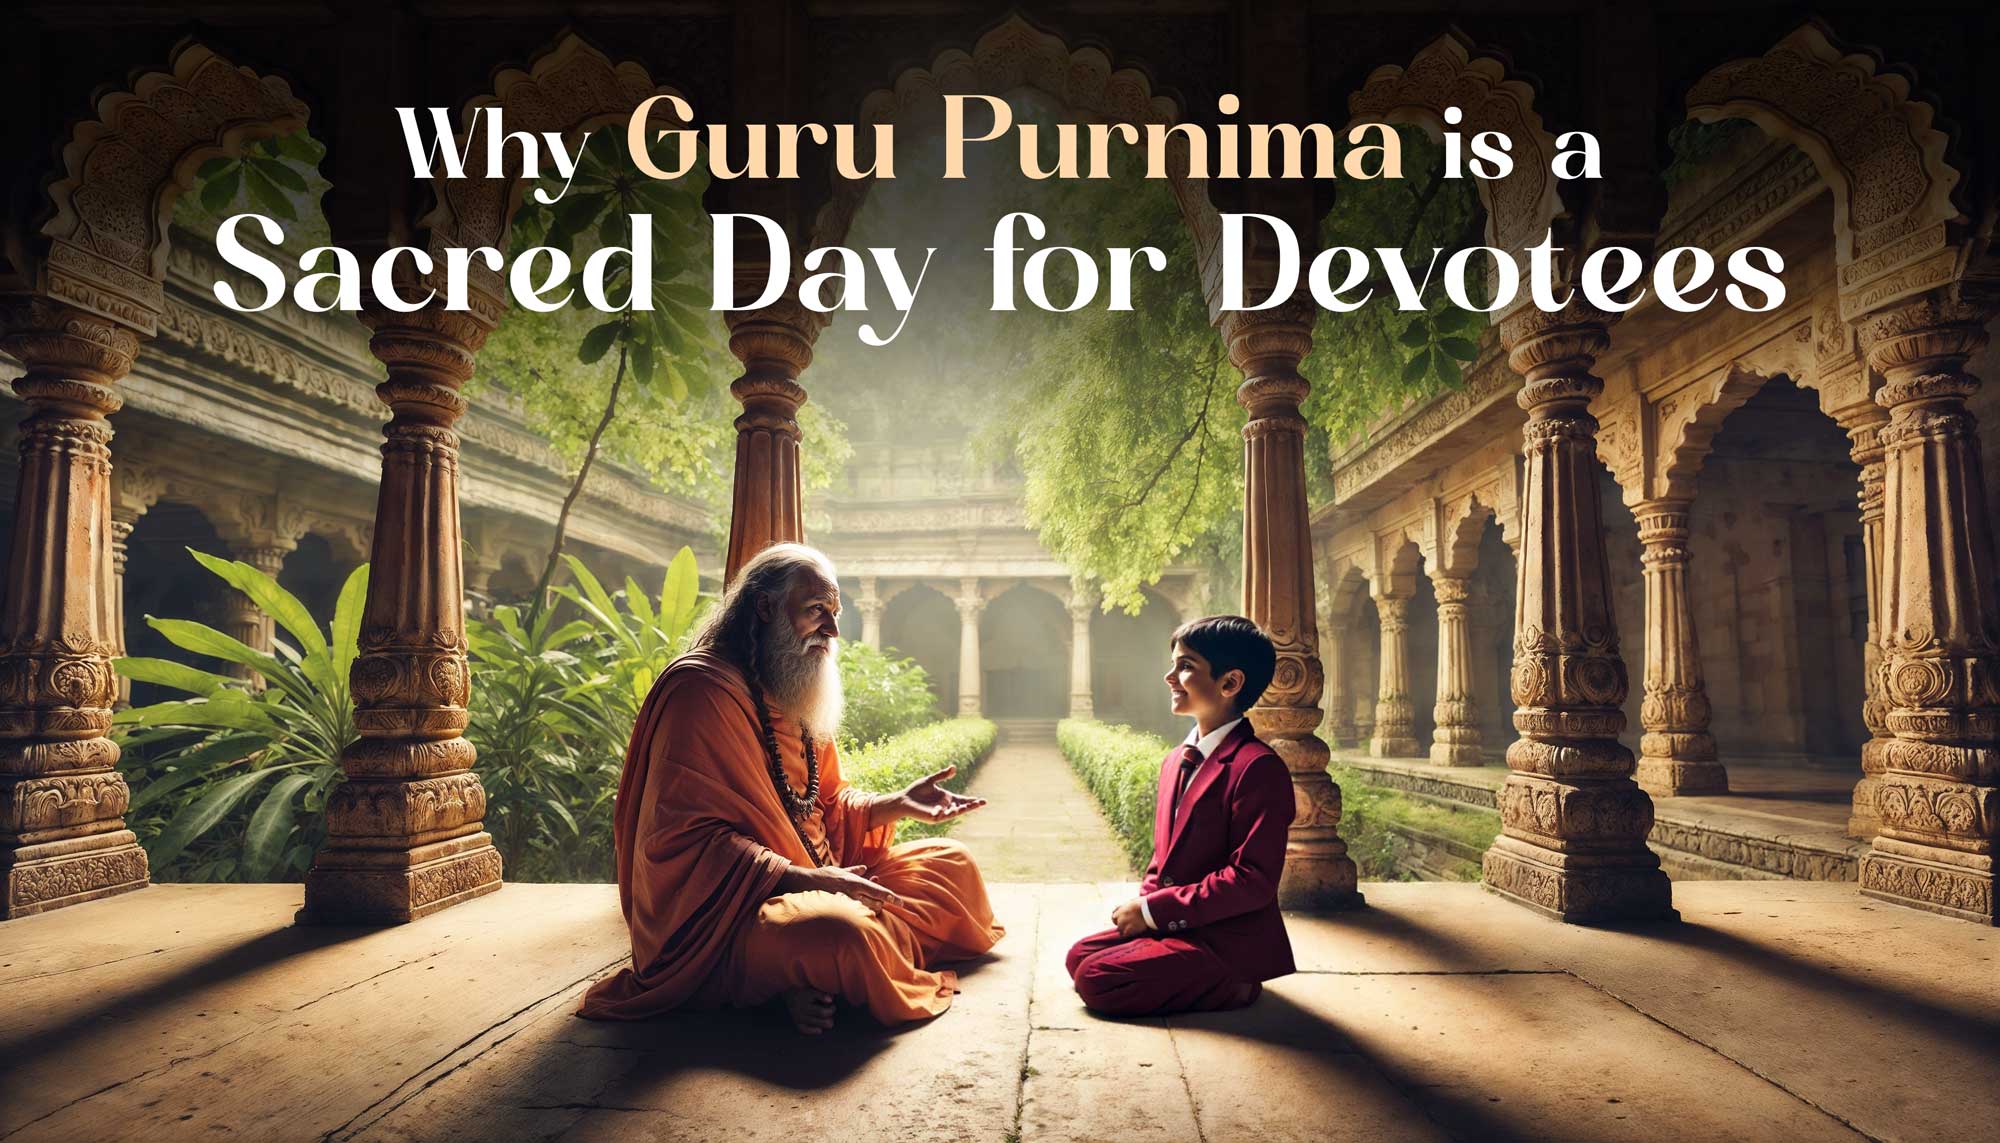 Why Guru Purnima is a Sacred Day?